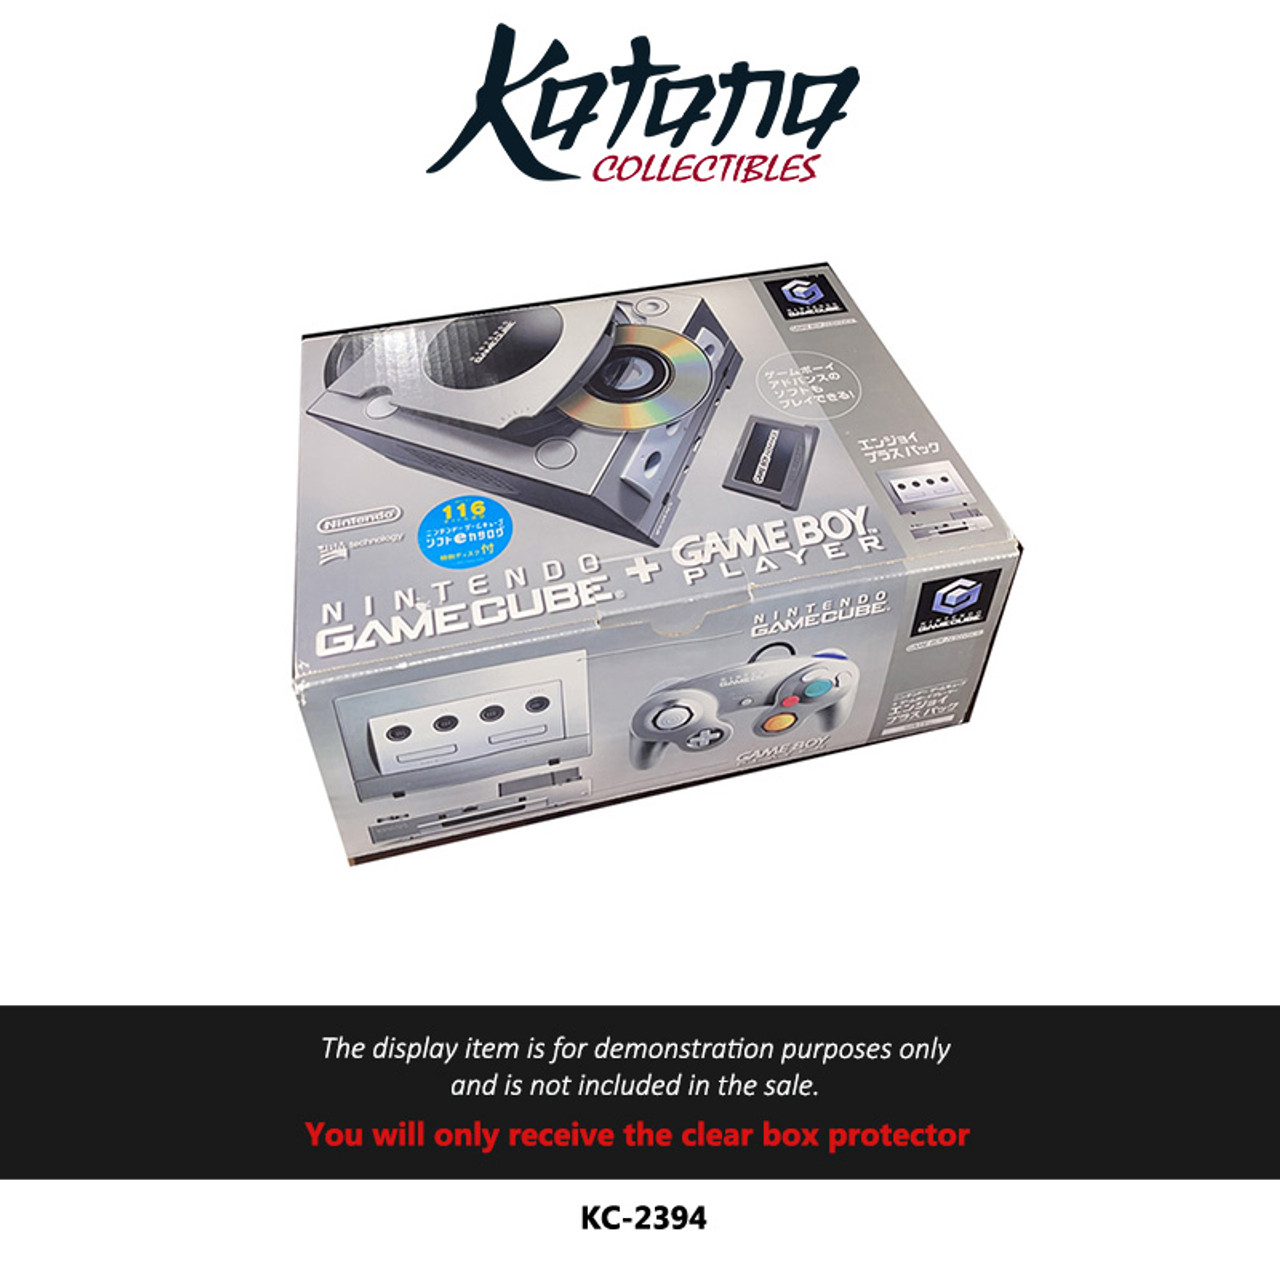 Katana Collectibles Protector For Nintendo Gamecube + Gameboy Player